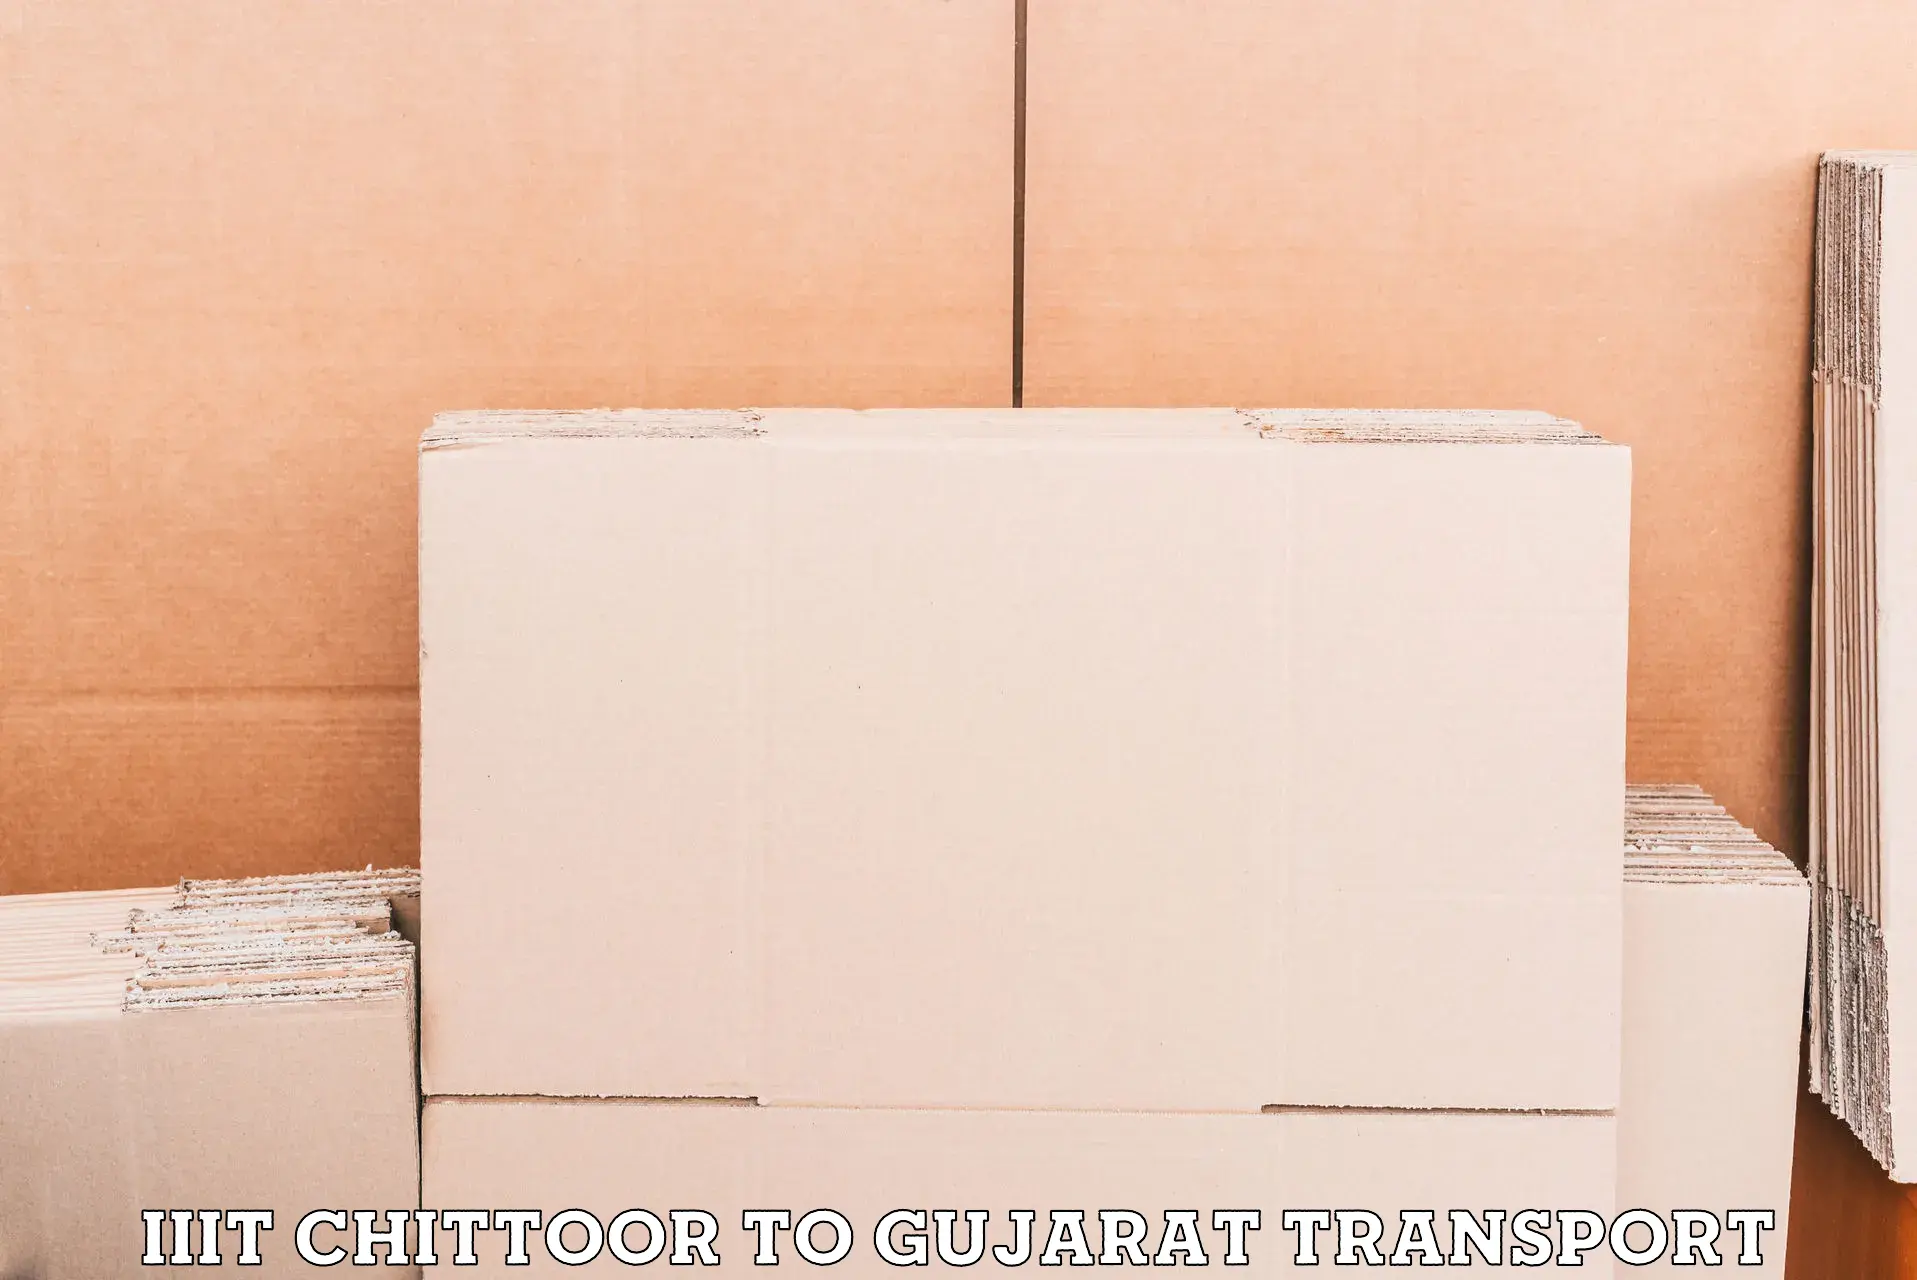 Material transport services IIIT Chittoor to IIIT Vadodara